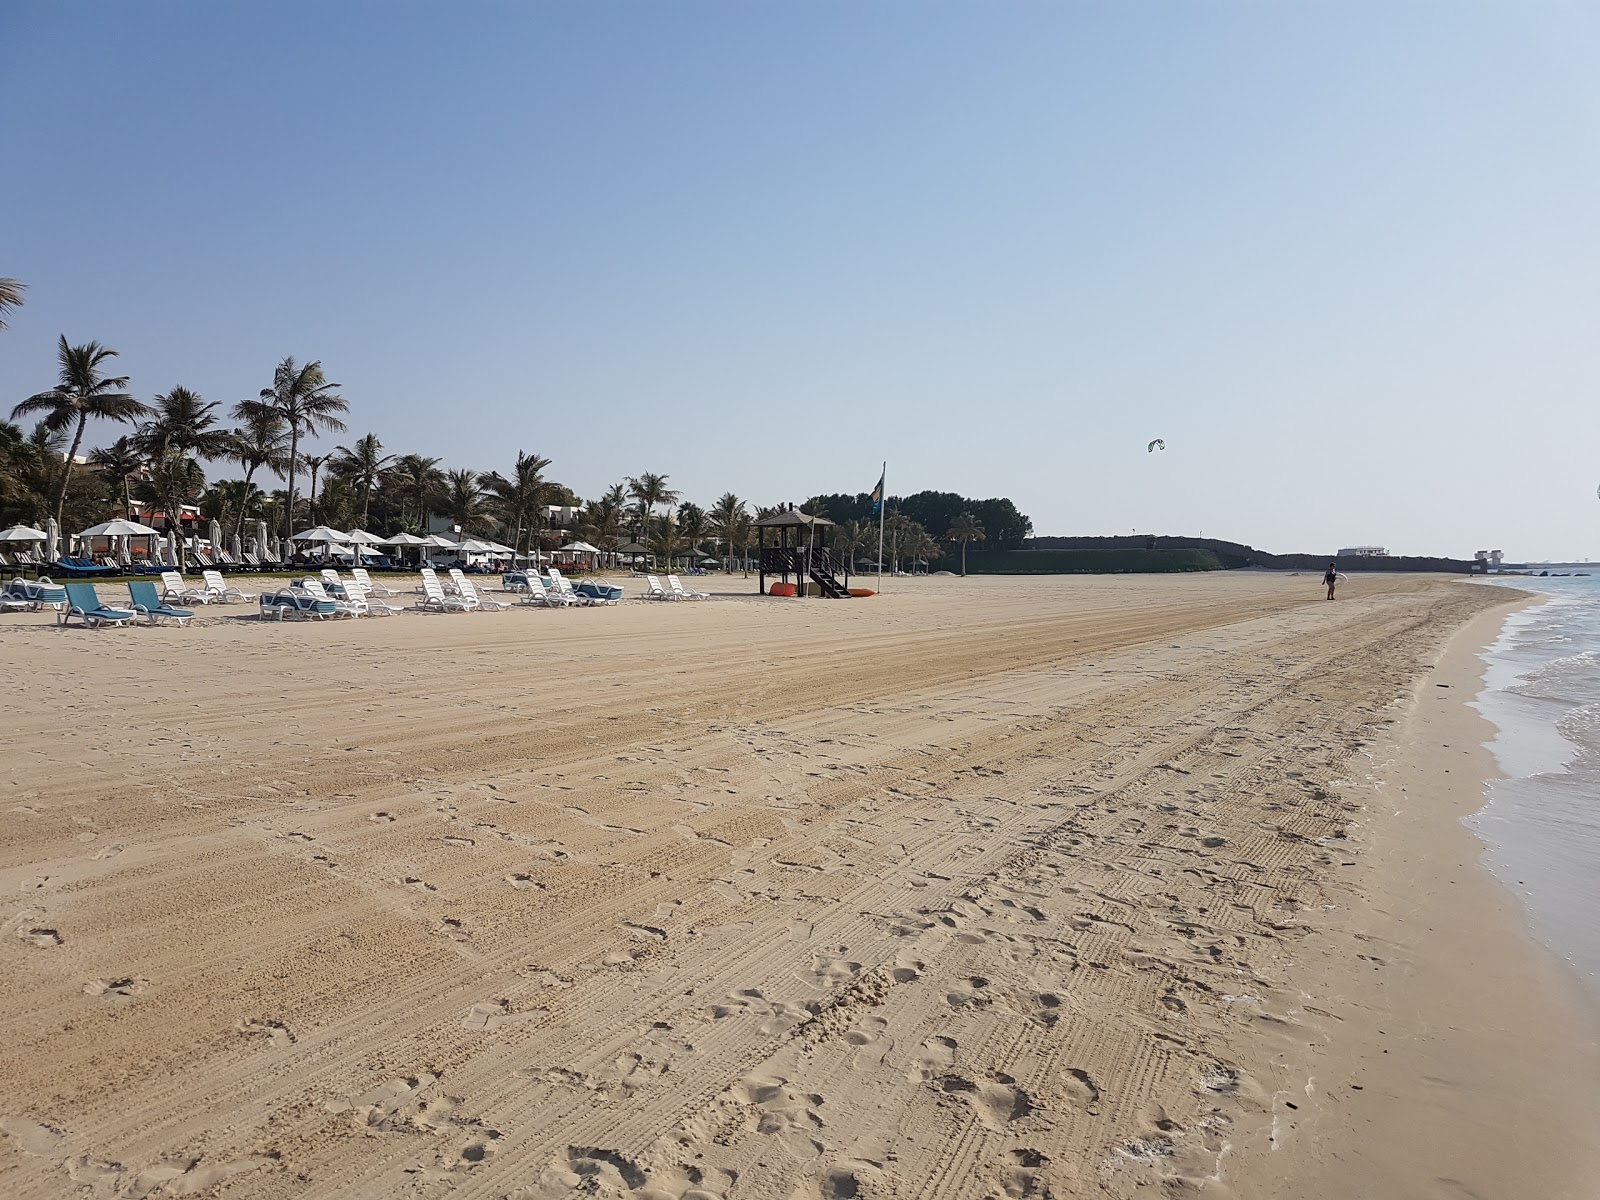 Fotografie cu Jebel Ali Beach - locul popular printre cunoscătorii de relaxare